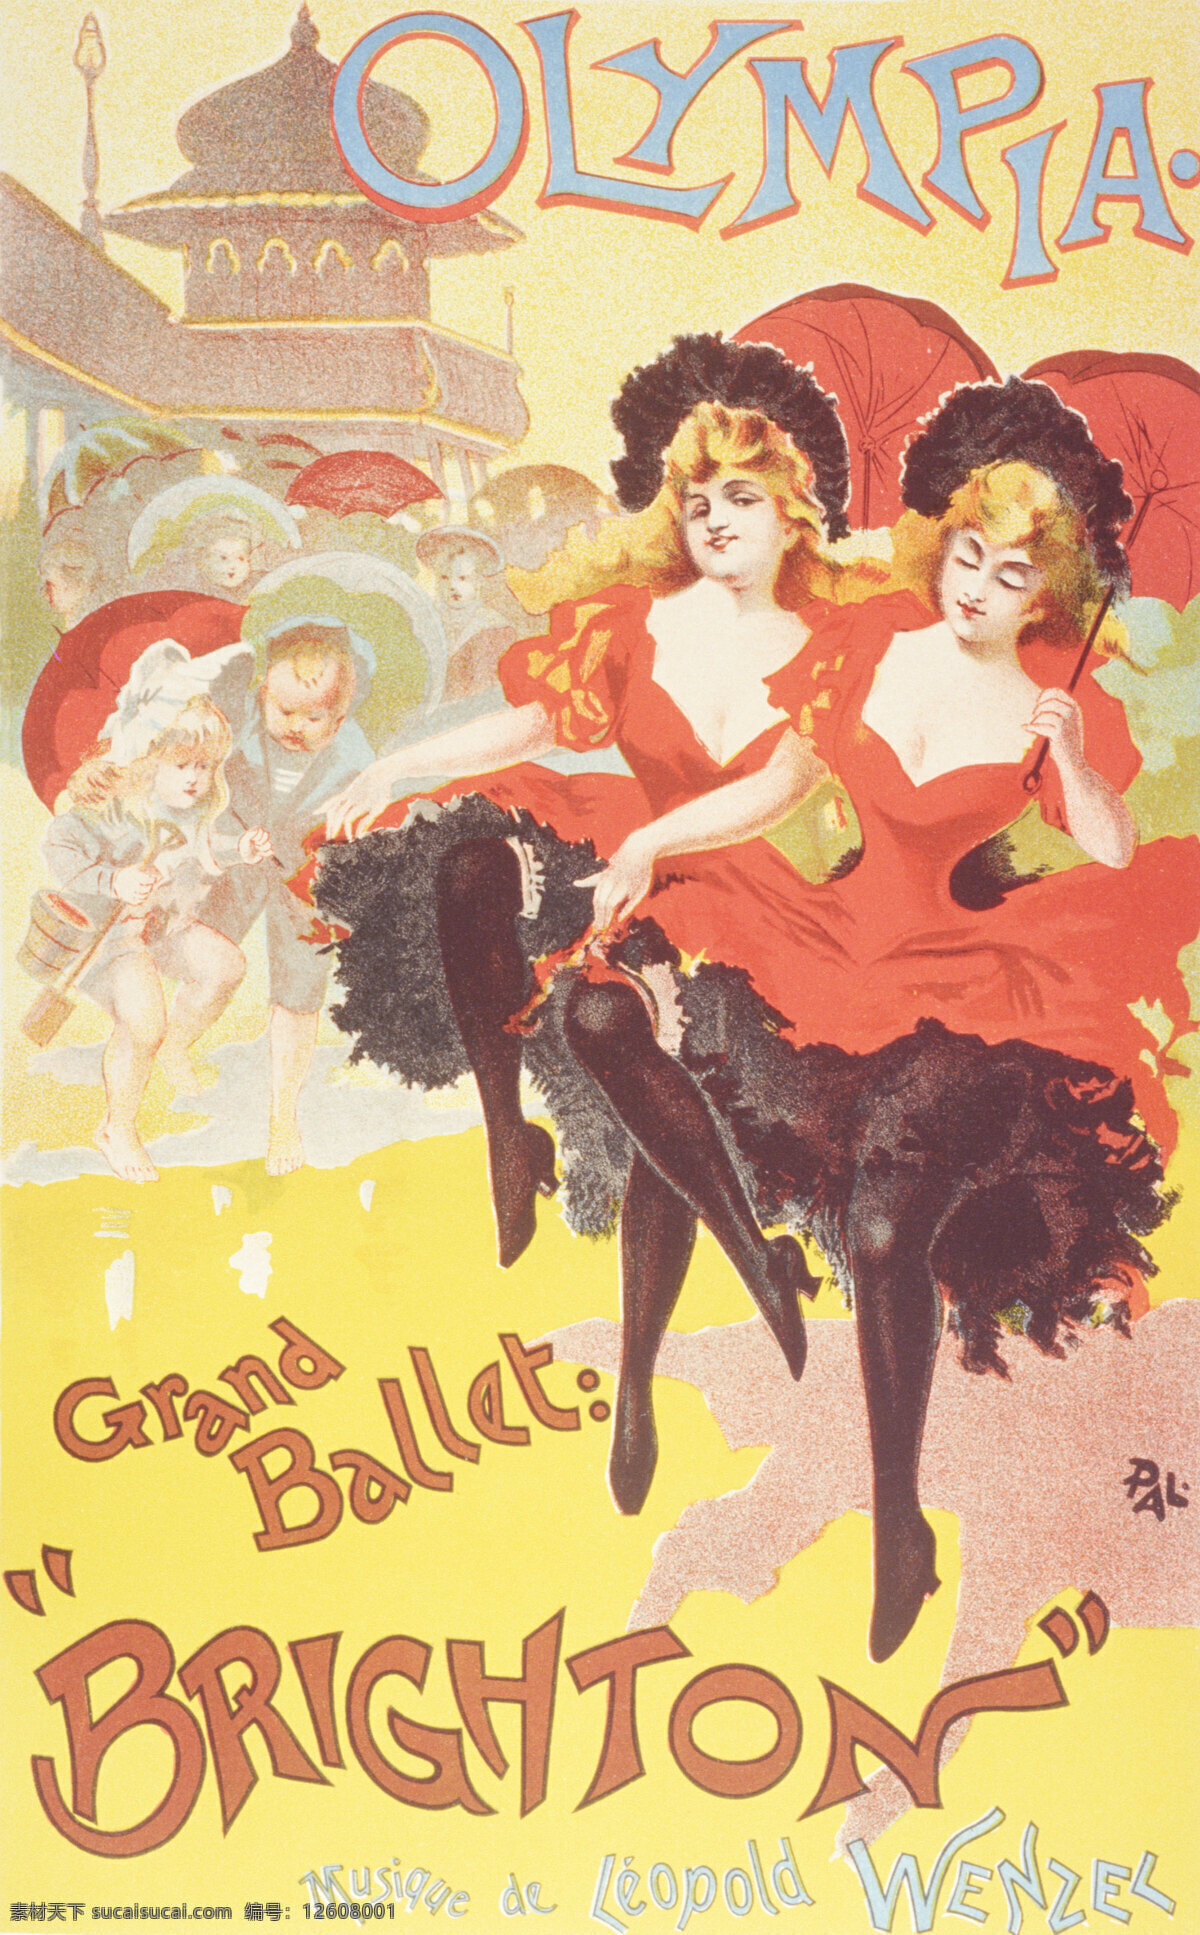 国外 红色 欢快 欢乐 欧式海报 欧洲 人物 海报 设计素材 双人 舞蹈 招贴设计 其他海报设计